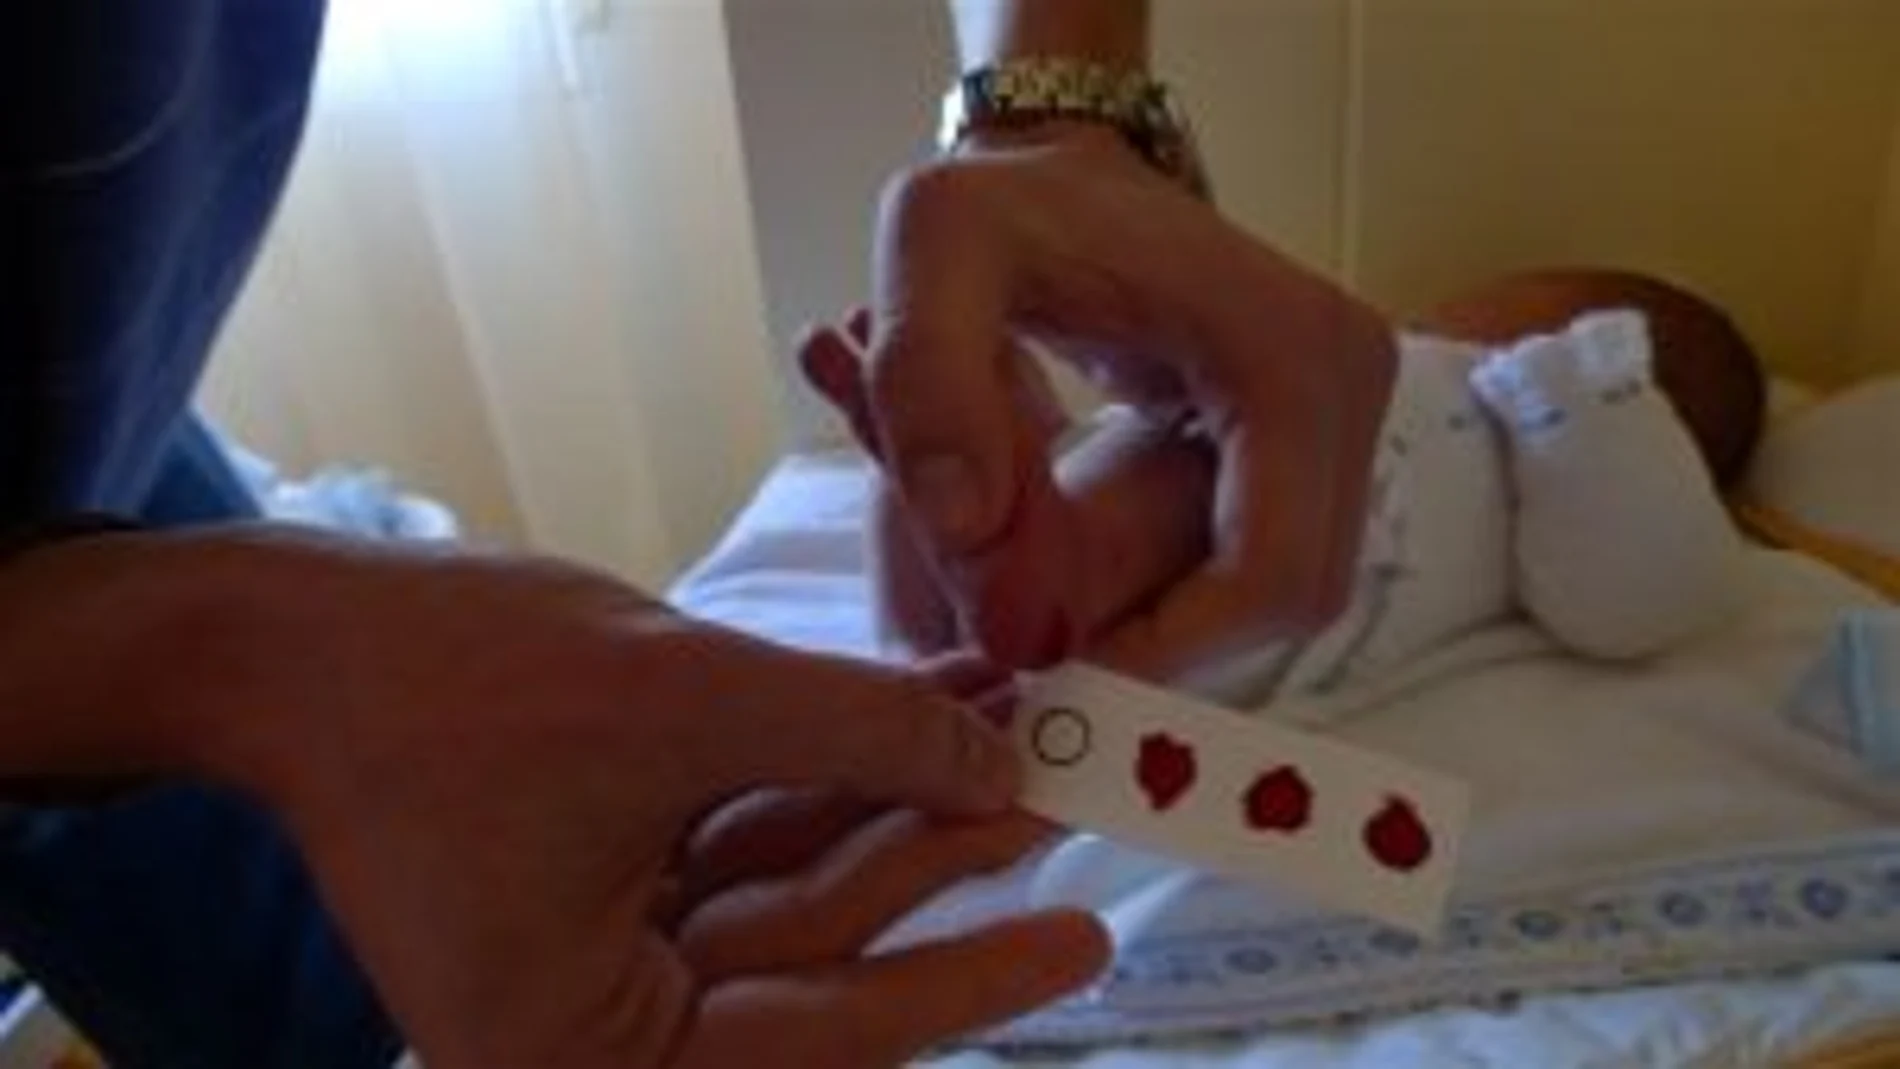 La prueba del talón sirve para detectar muchas patologías en los recién nacidos